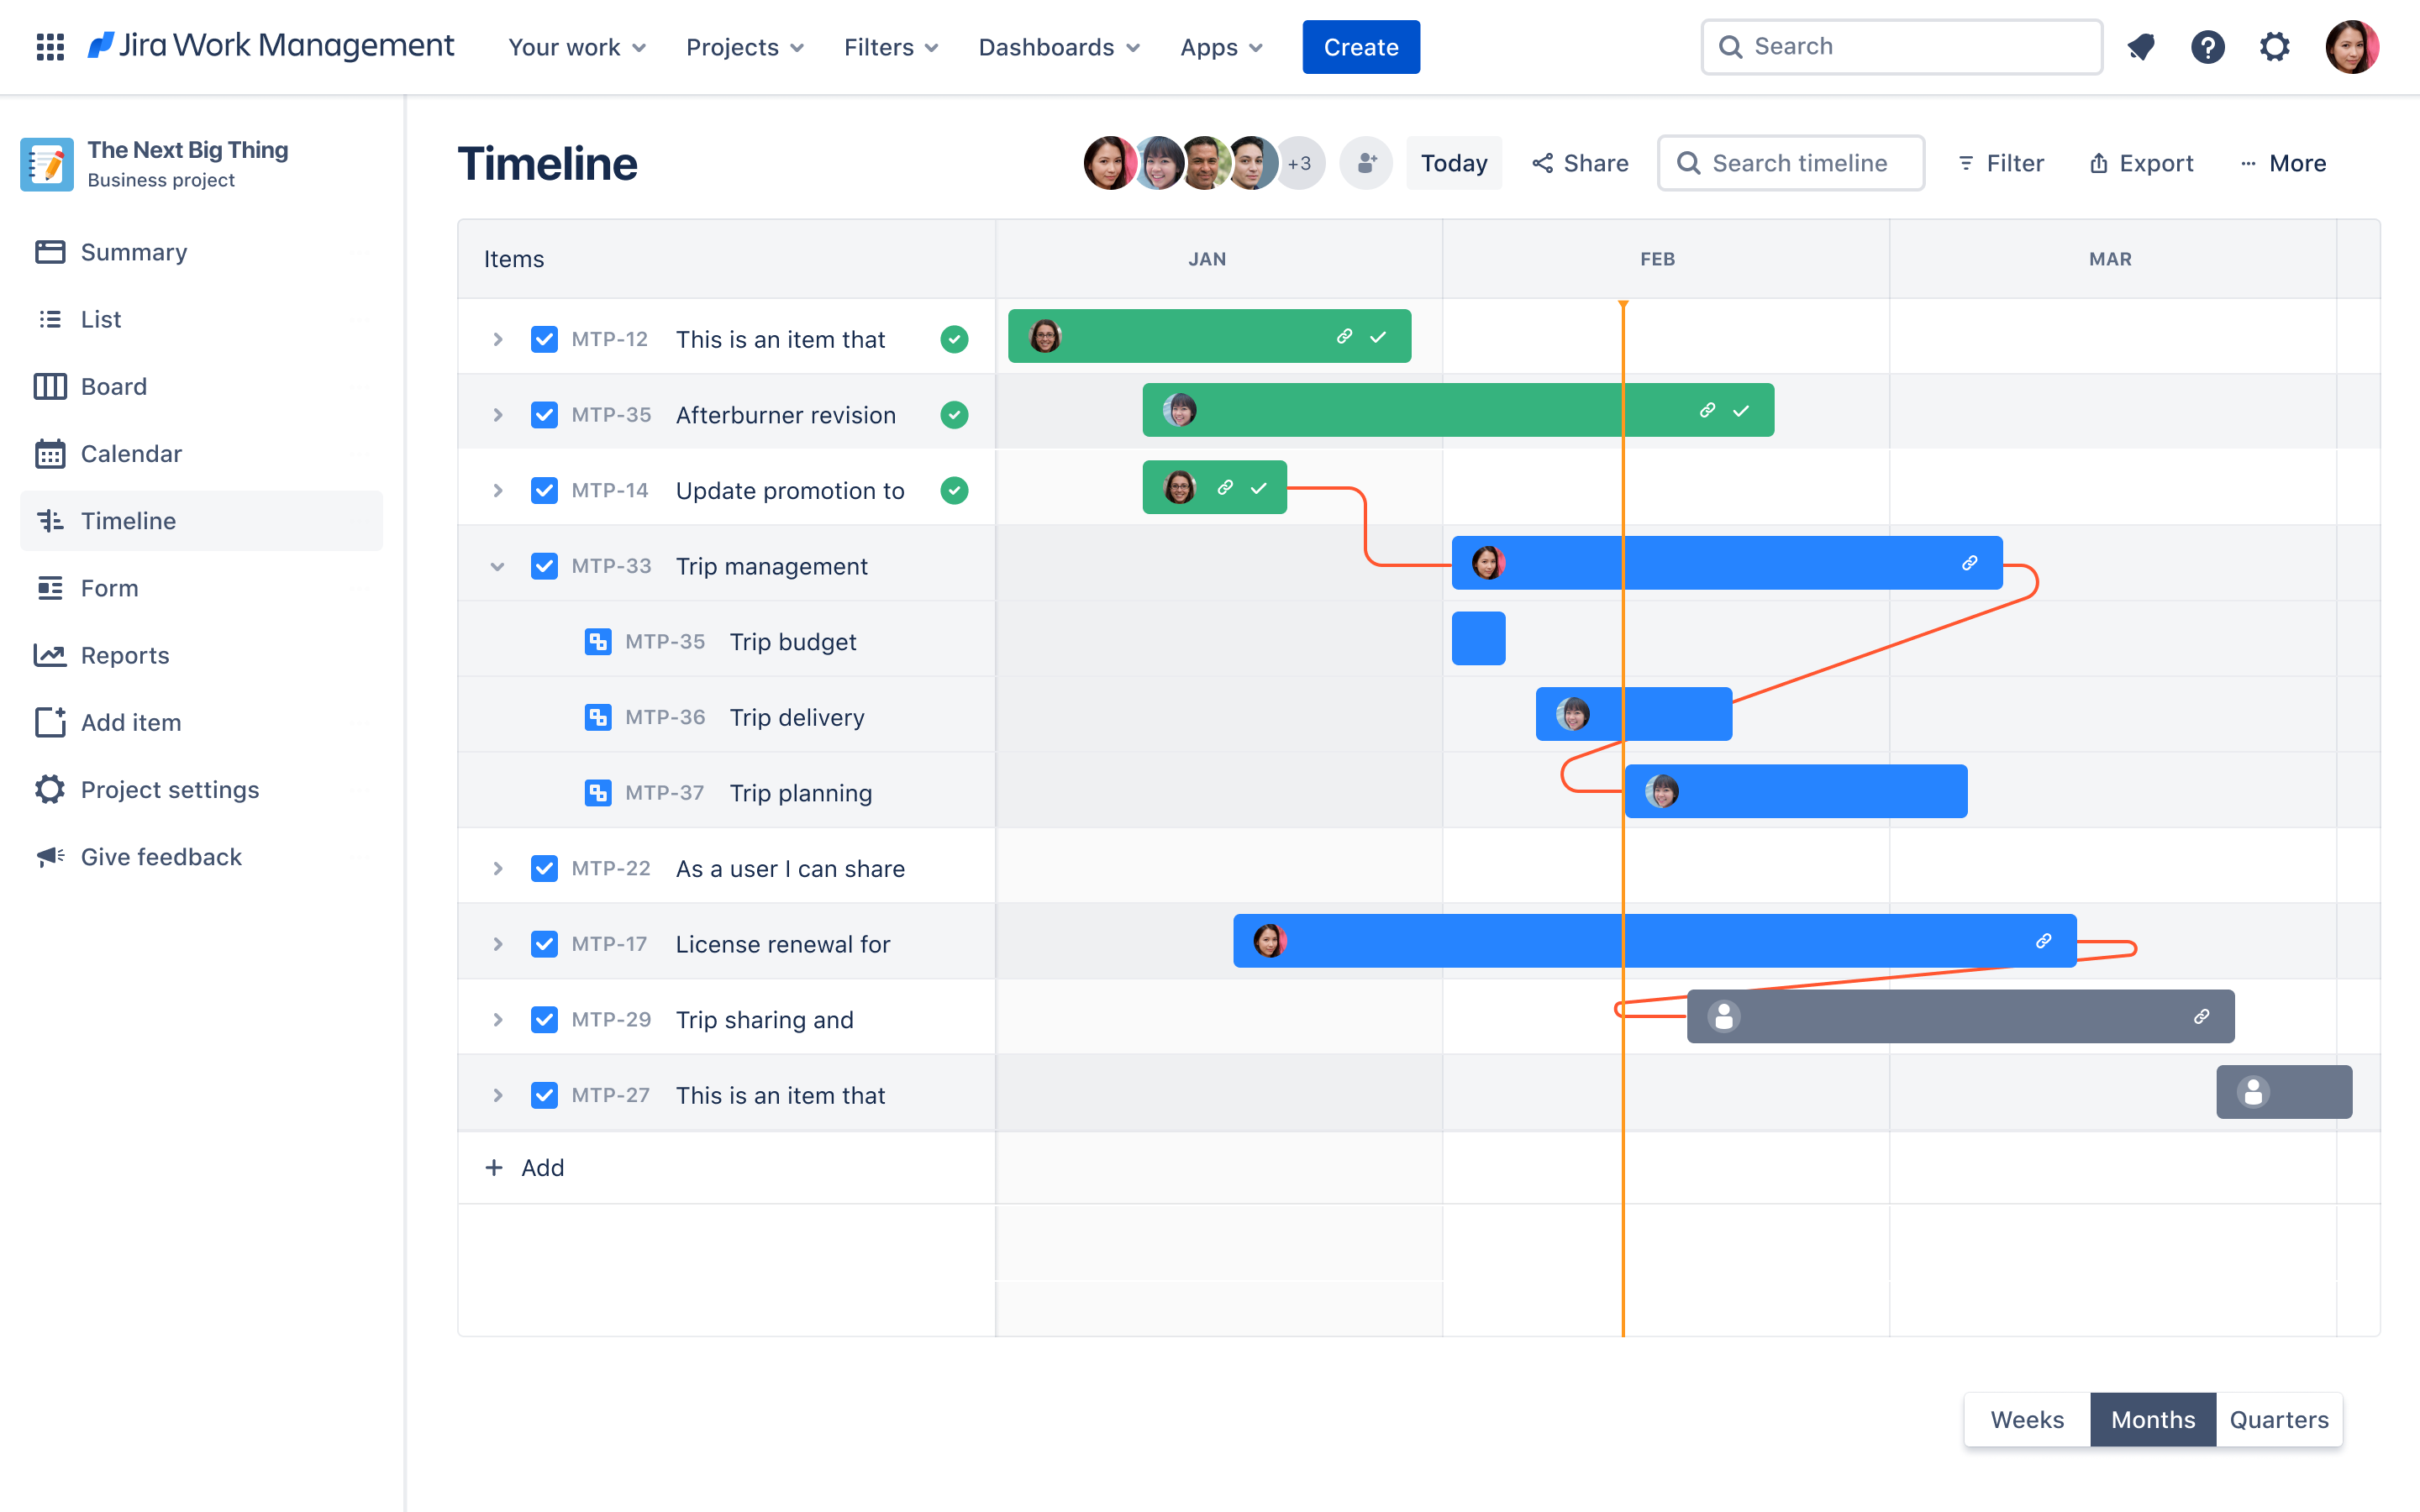 Jira Work Management timeline view showing program management tasks, dependencies, and assigned work